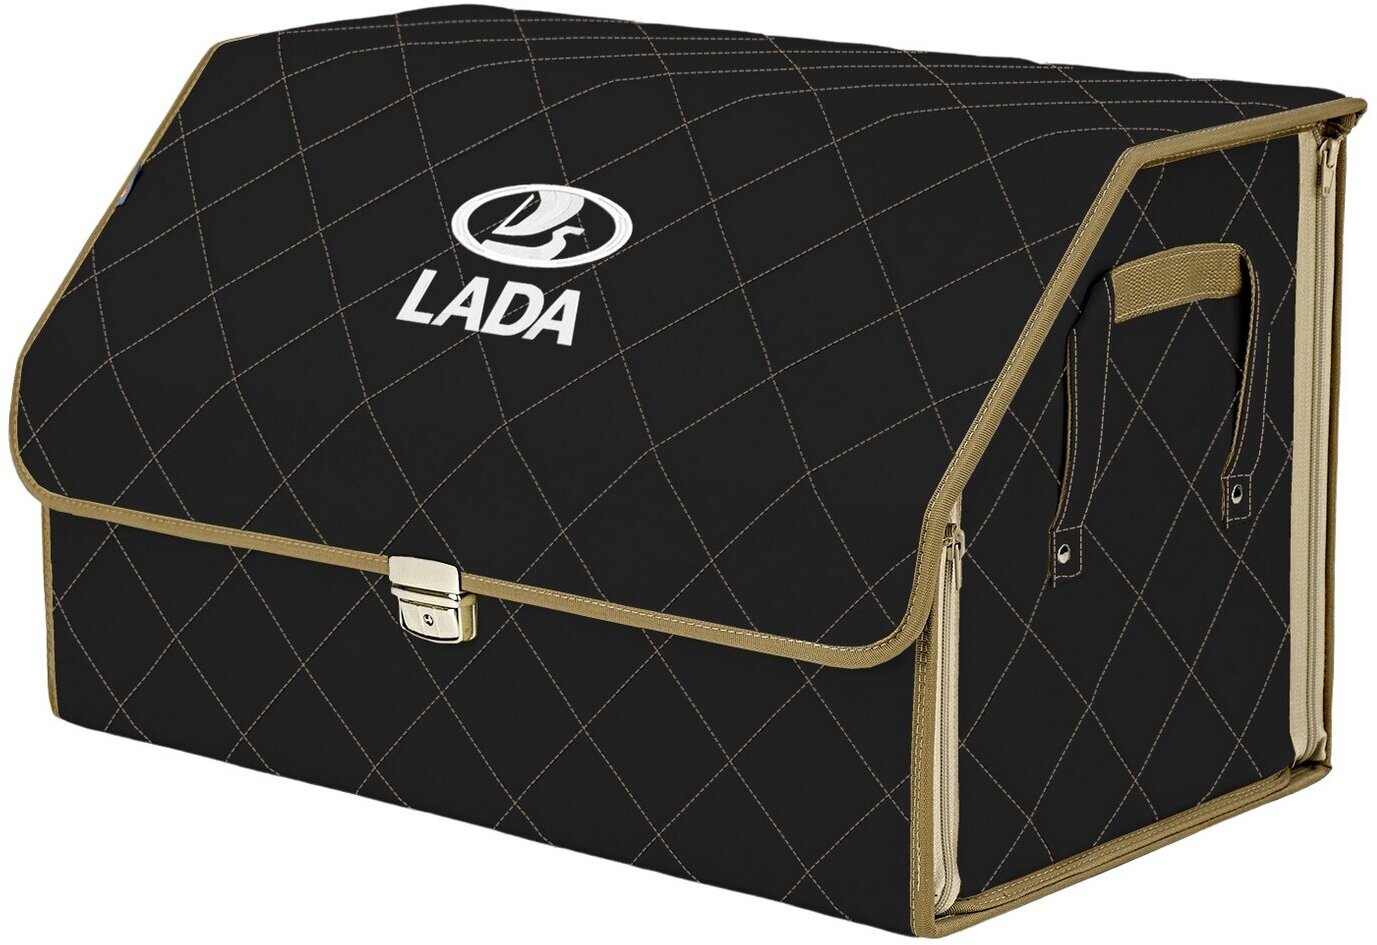 Органайзер-саквояж в багажник "Союз Премиум" (размер XL). Цвет: черный с бежевой прострочкой Ромб и вышивкой LADA (лада).